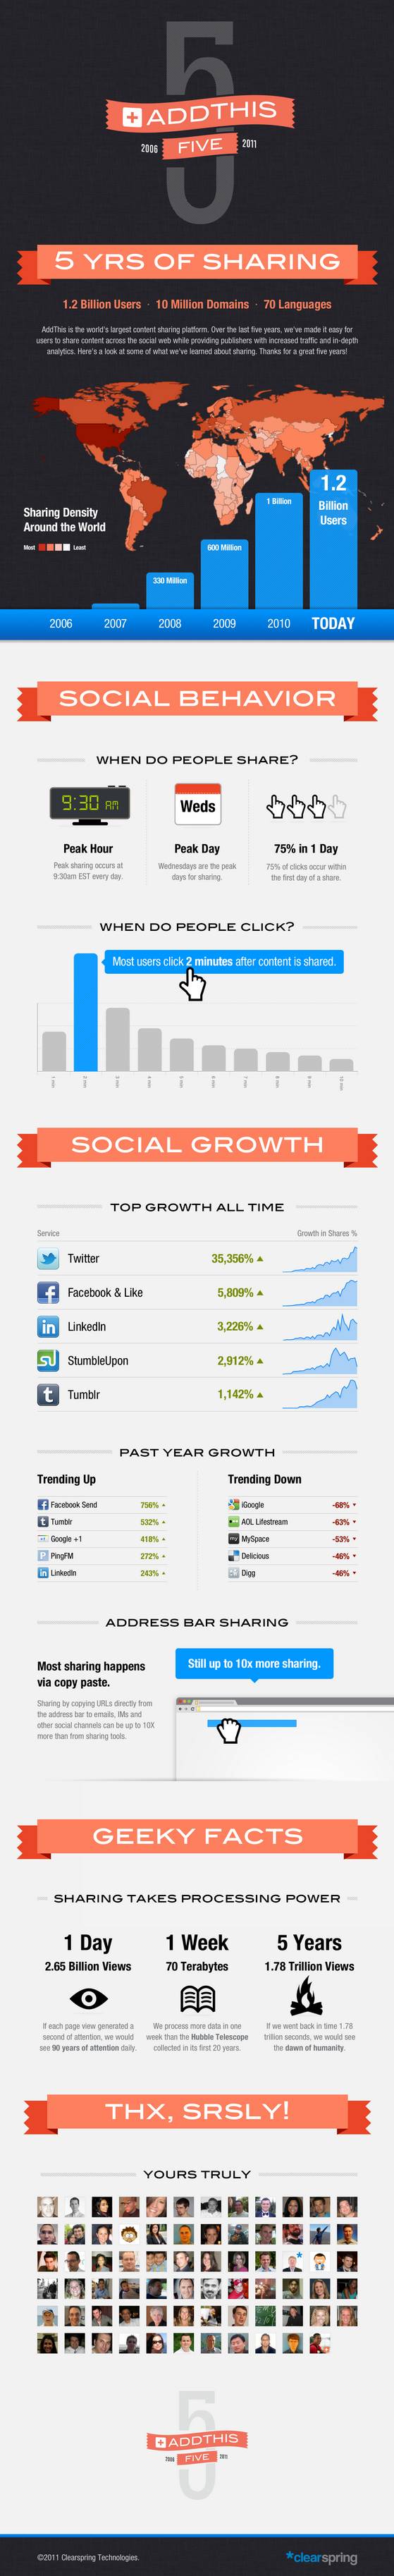 Compartiendo contenido a través de la Social Media en los últimos 5 años 1